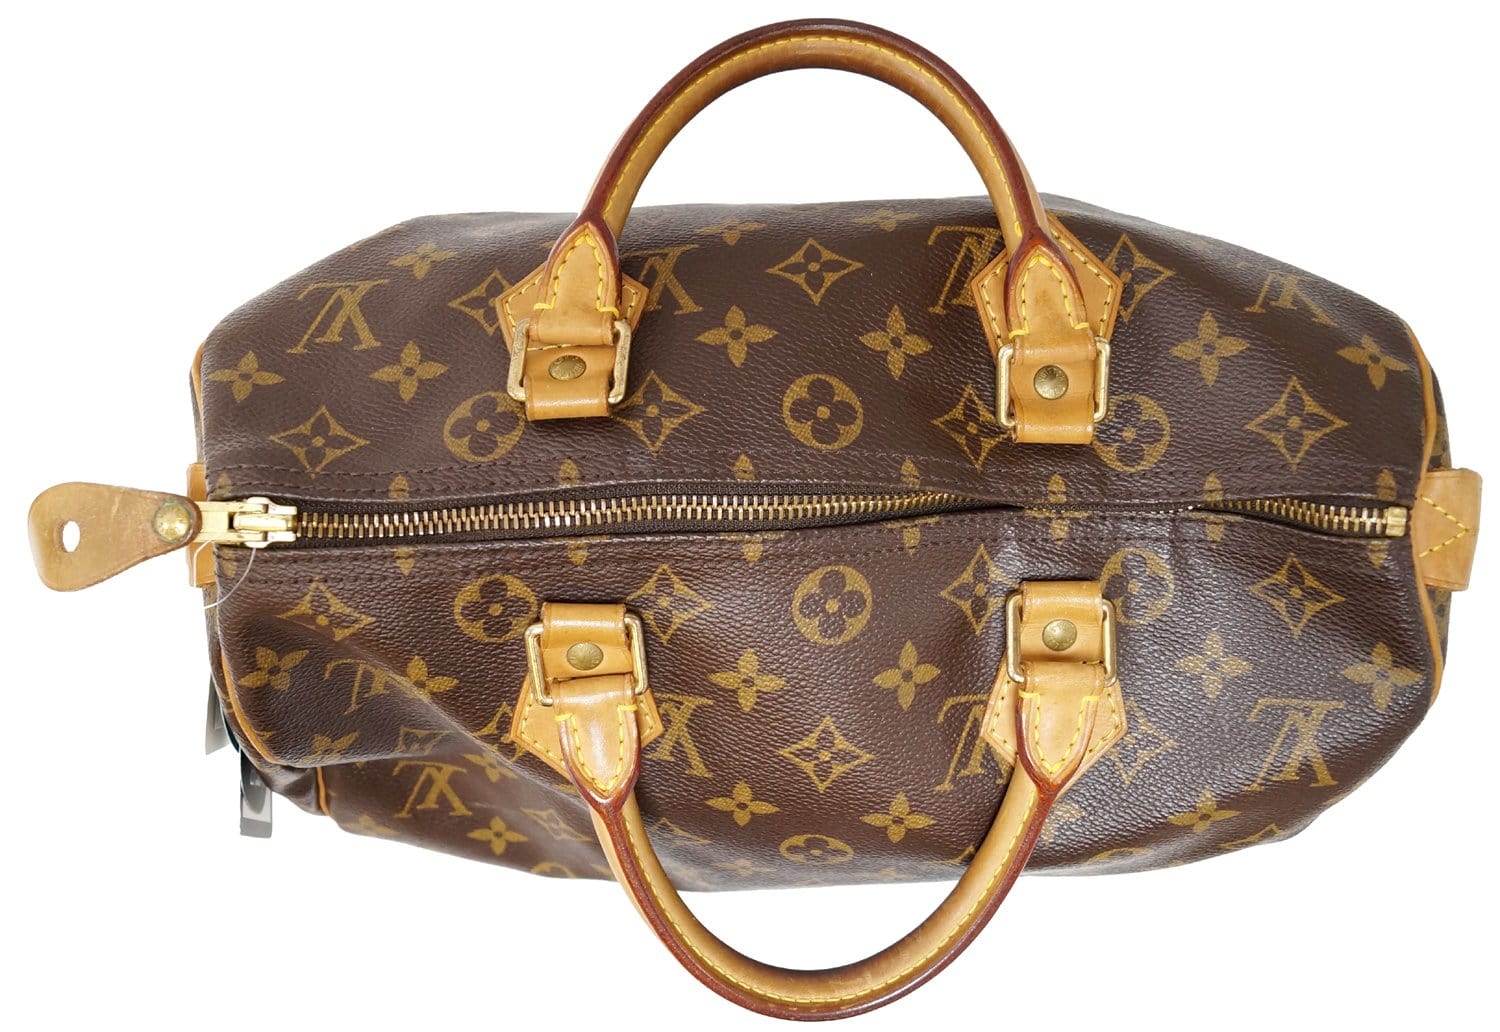 Louis Vuitton What Goes Around Comes Around Monogram Speedy 30 Bag, $1,050, shopbop.com